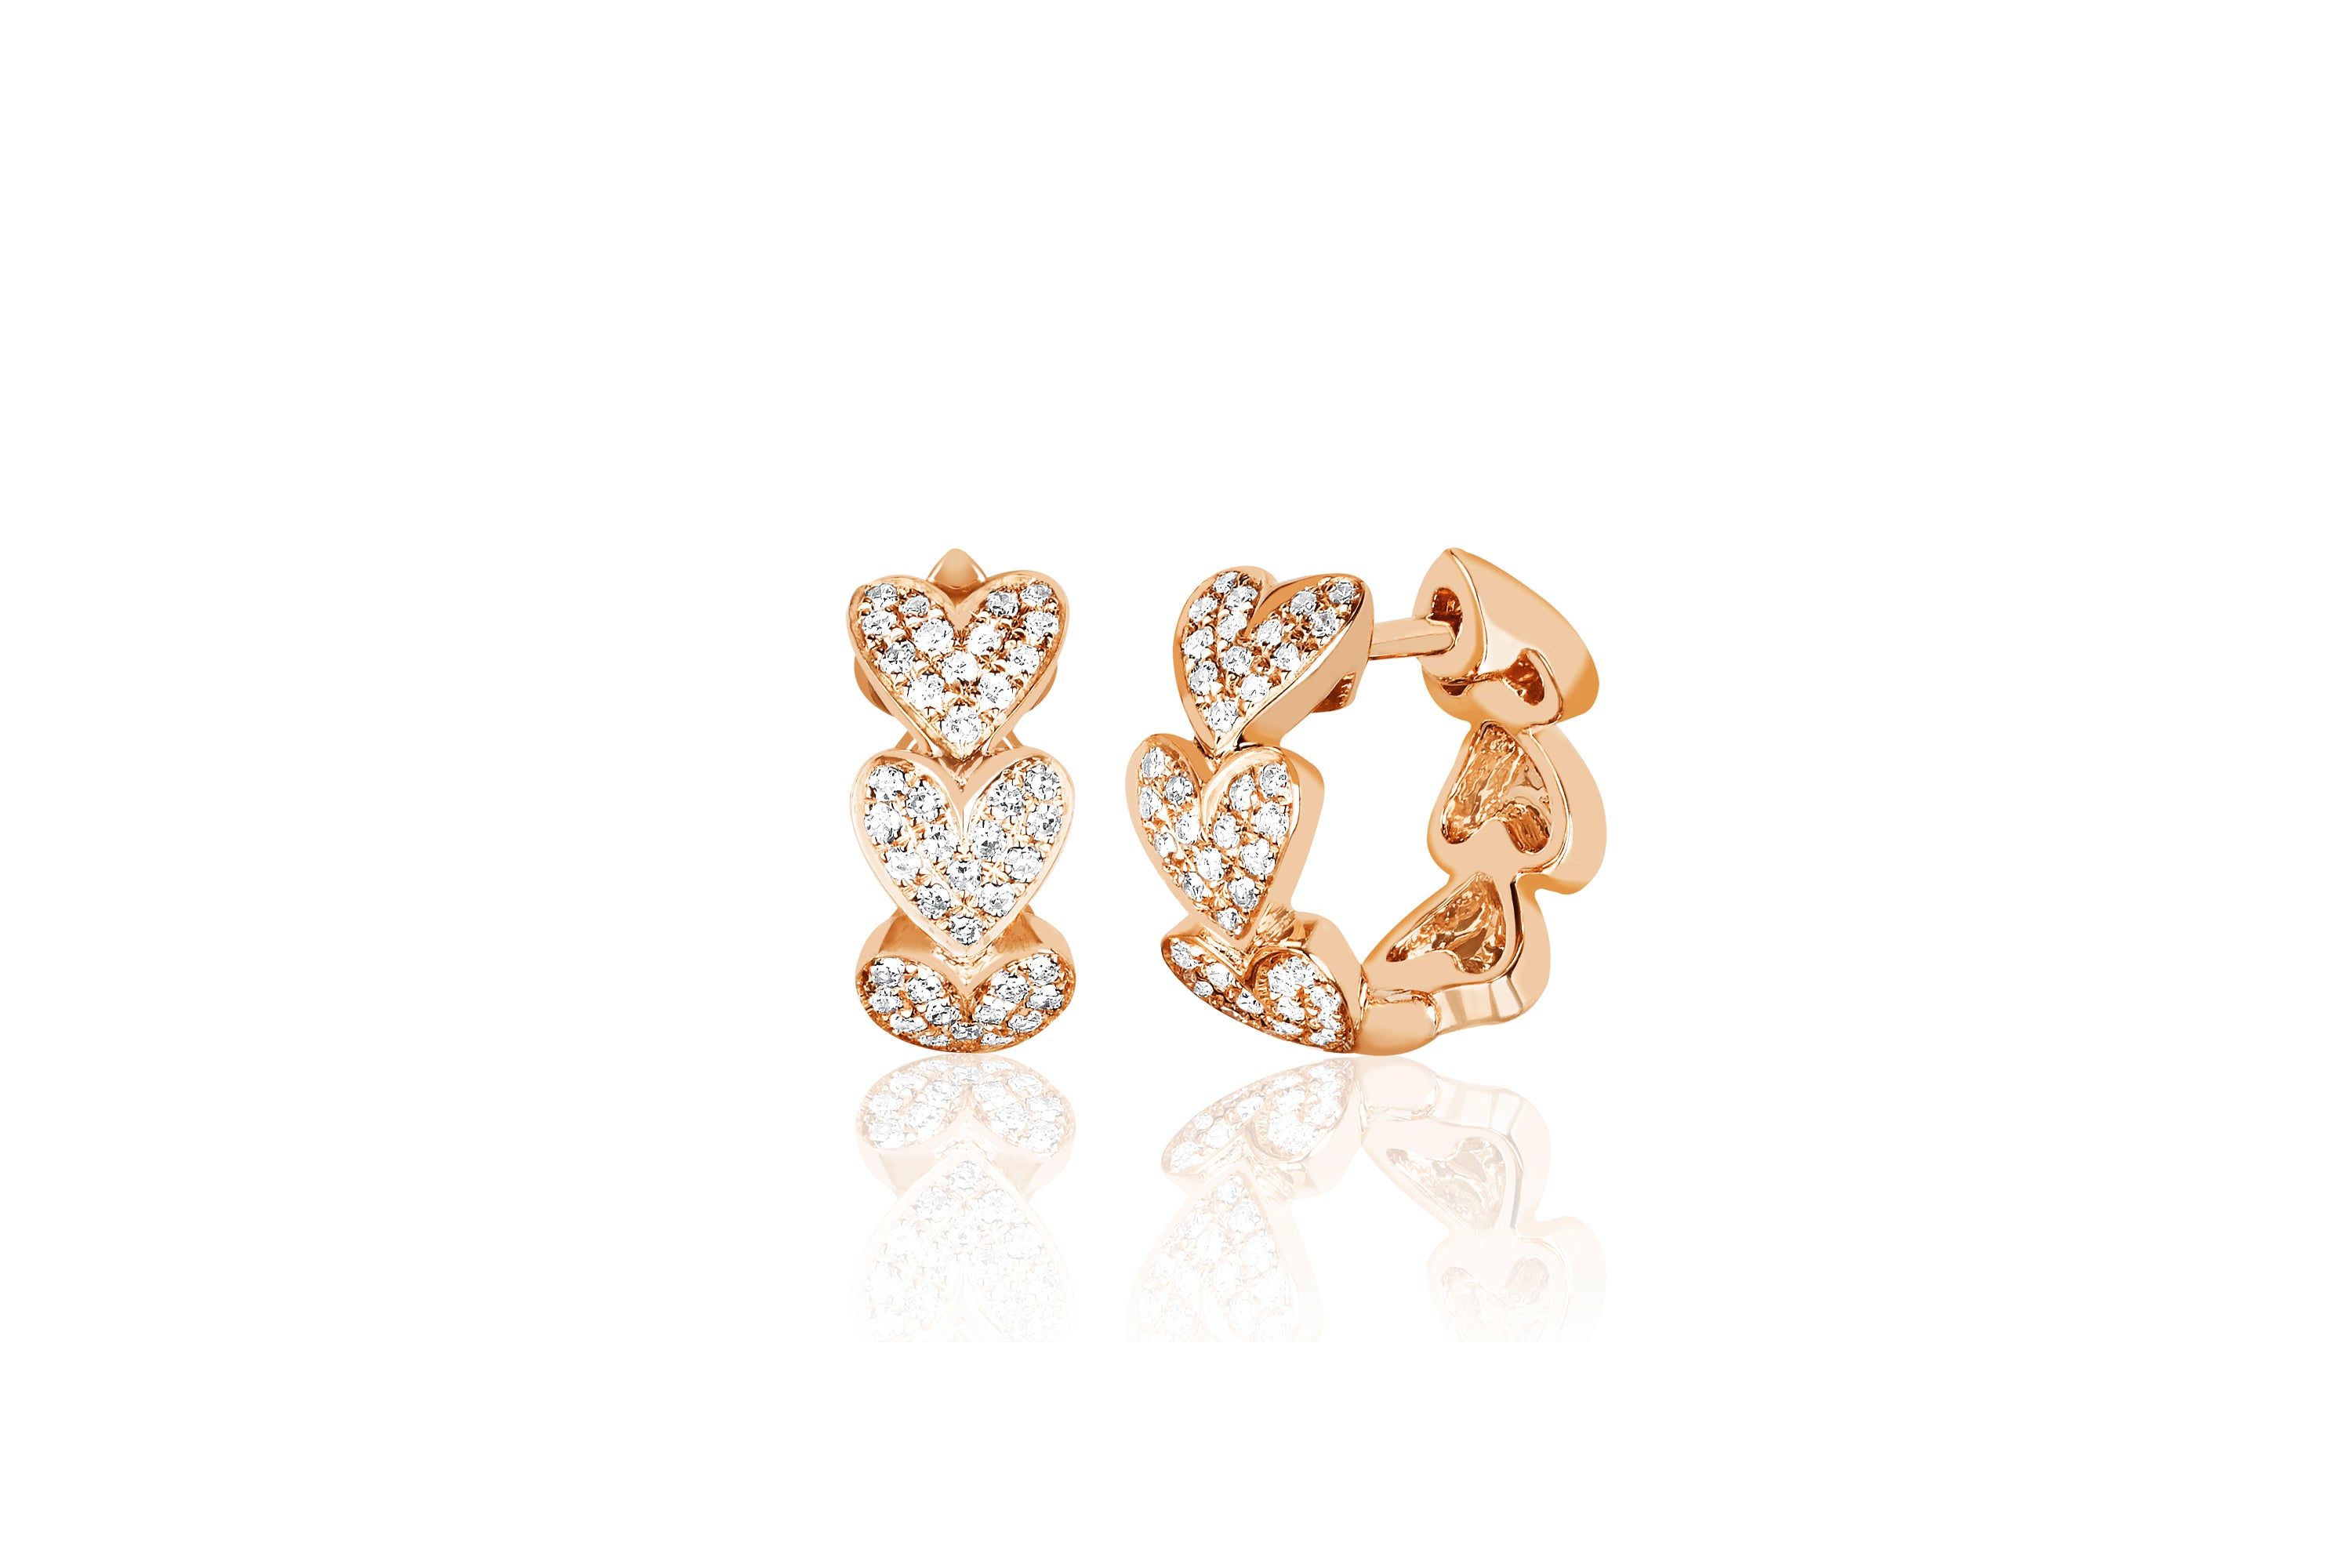 14k (karat) rose gold huggie earring with multiple heart pendants encrusted in diamonds. Each heart measuring 5 mm.